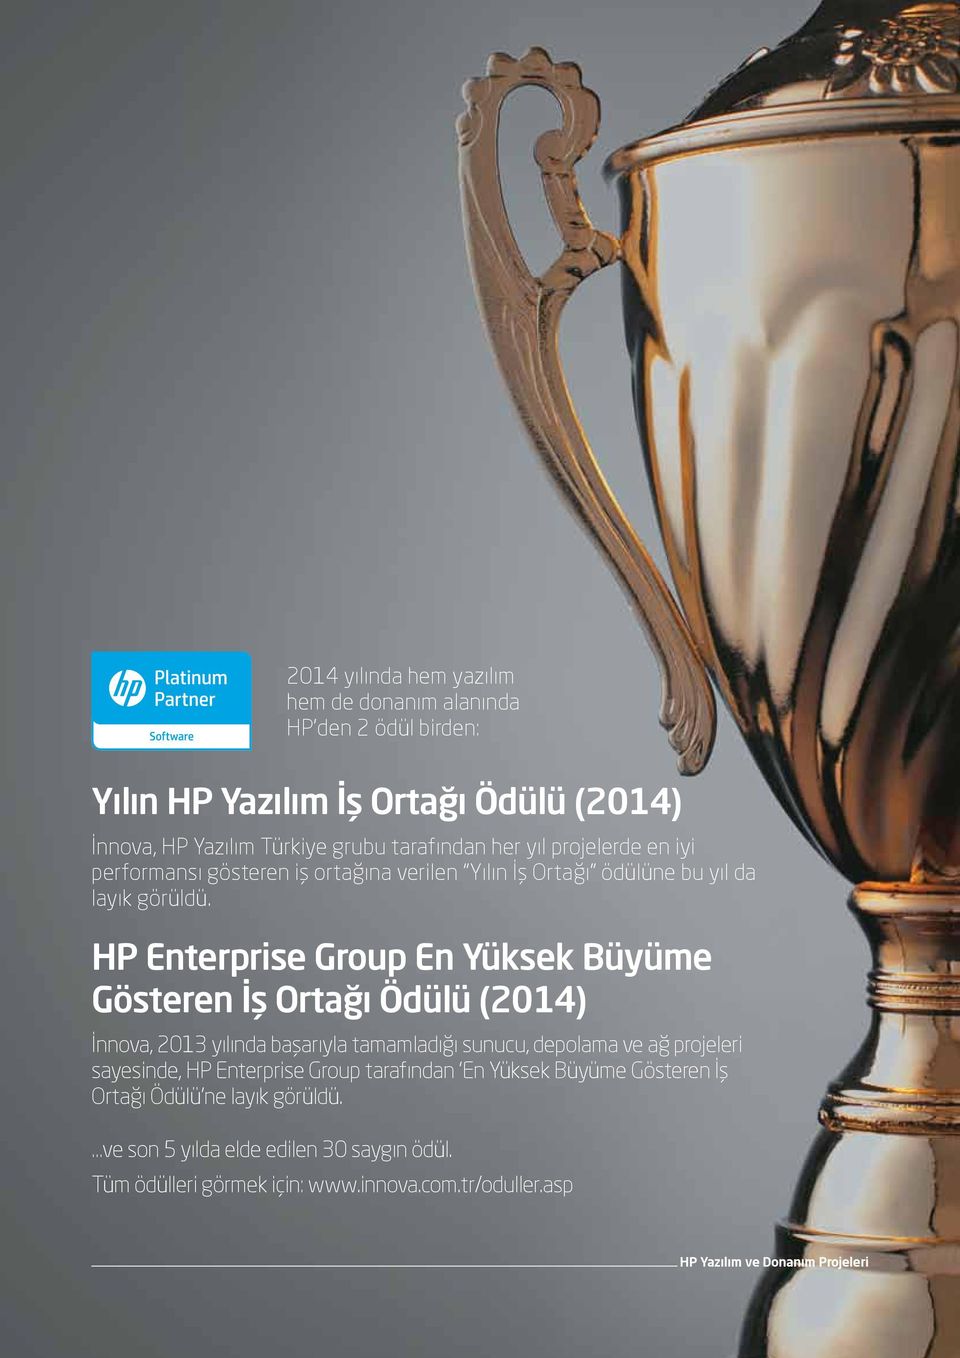 HP Enterprise Group En Yüksek Büyüme Gösteren İş Ortağı Ödülü (2014) İnnova, 2013 yılında başarıyla tamamladığı sunucu, depolama ve ağ projeleri sayesinde, HP